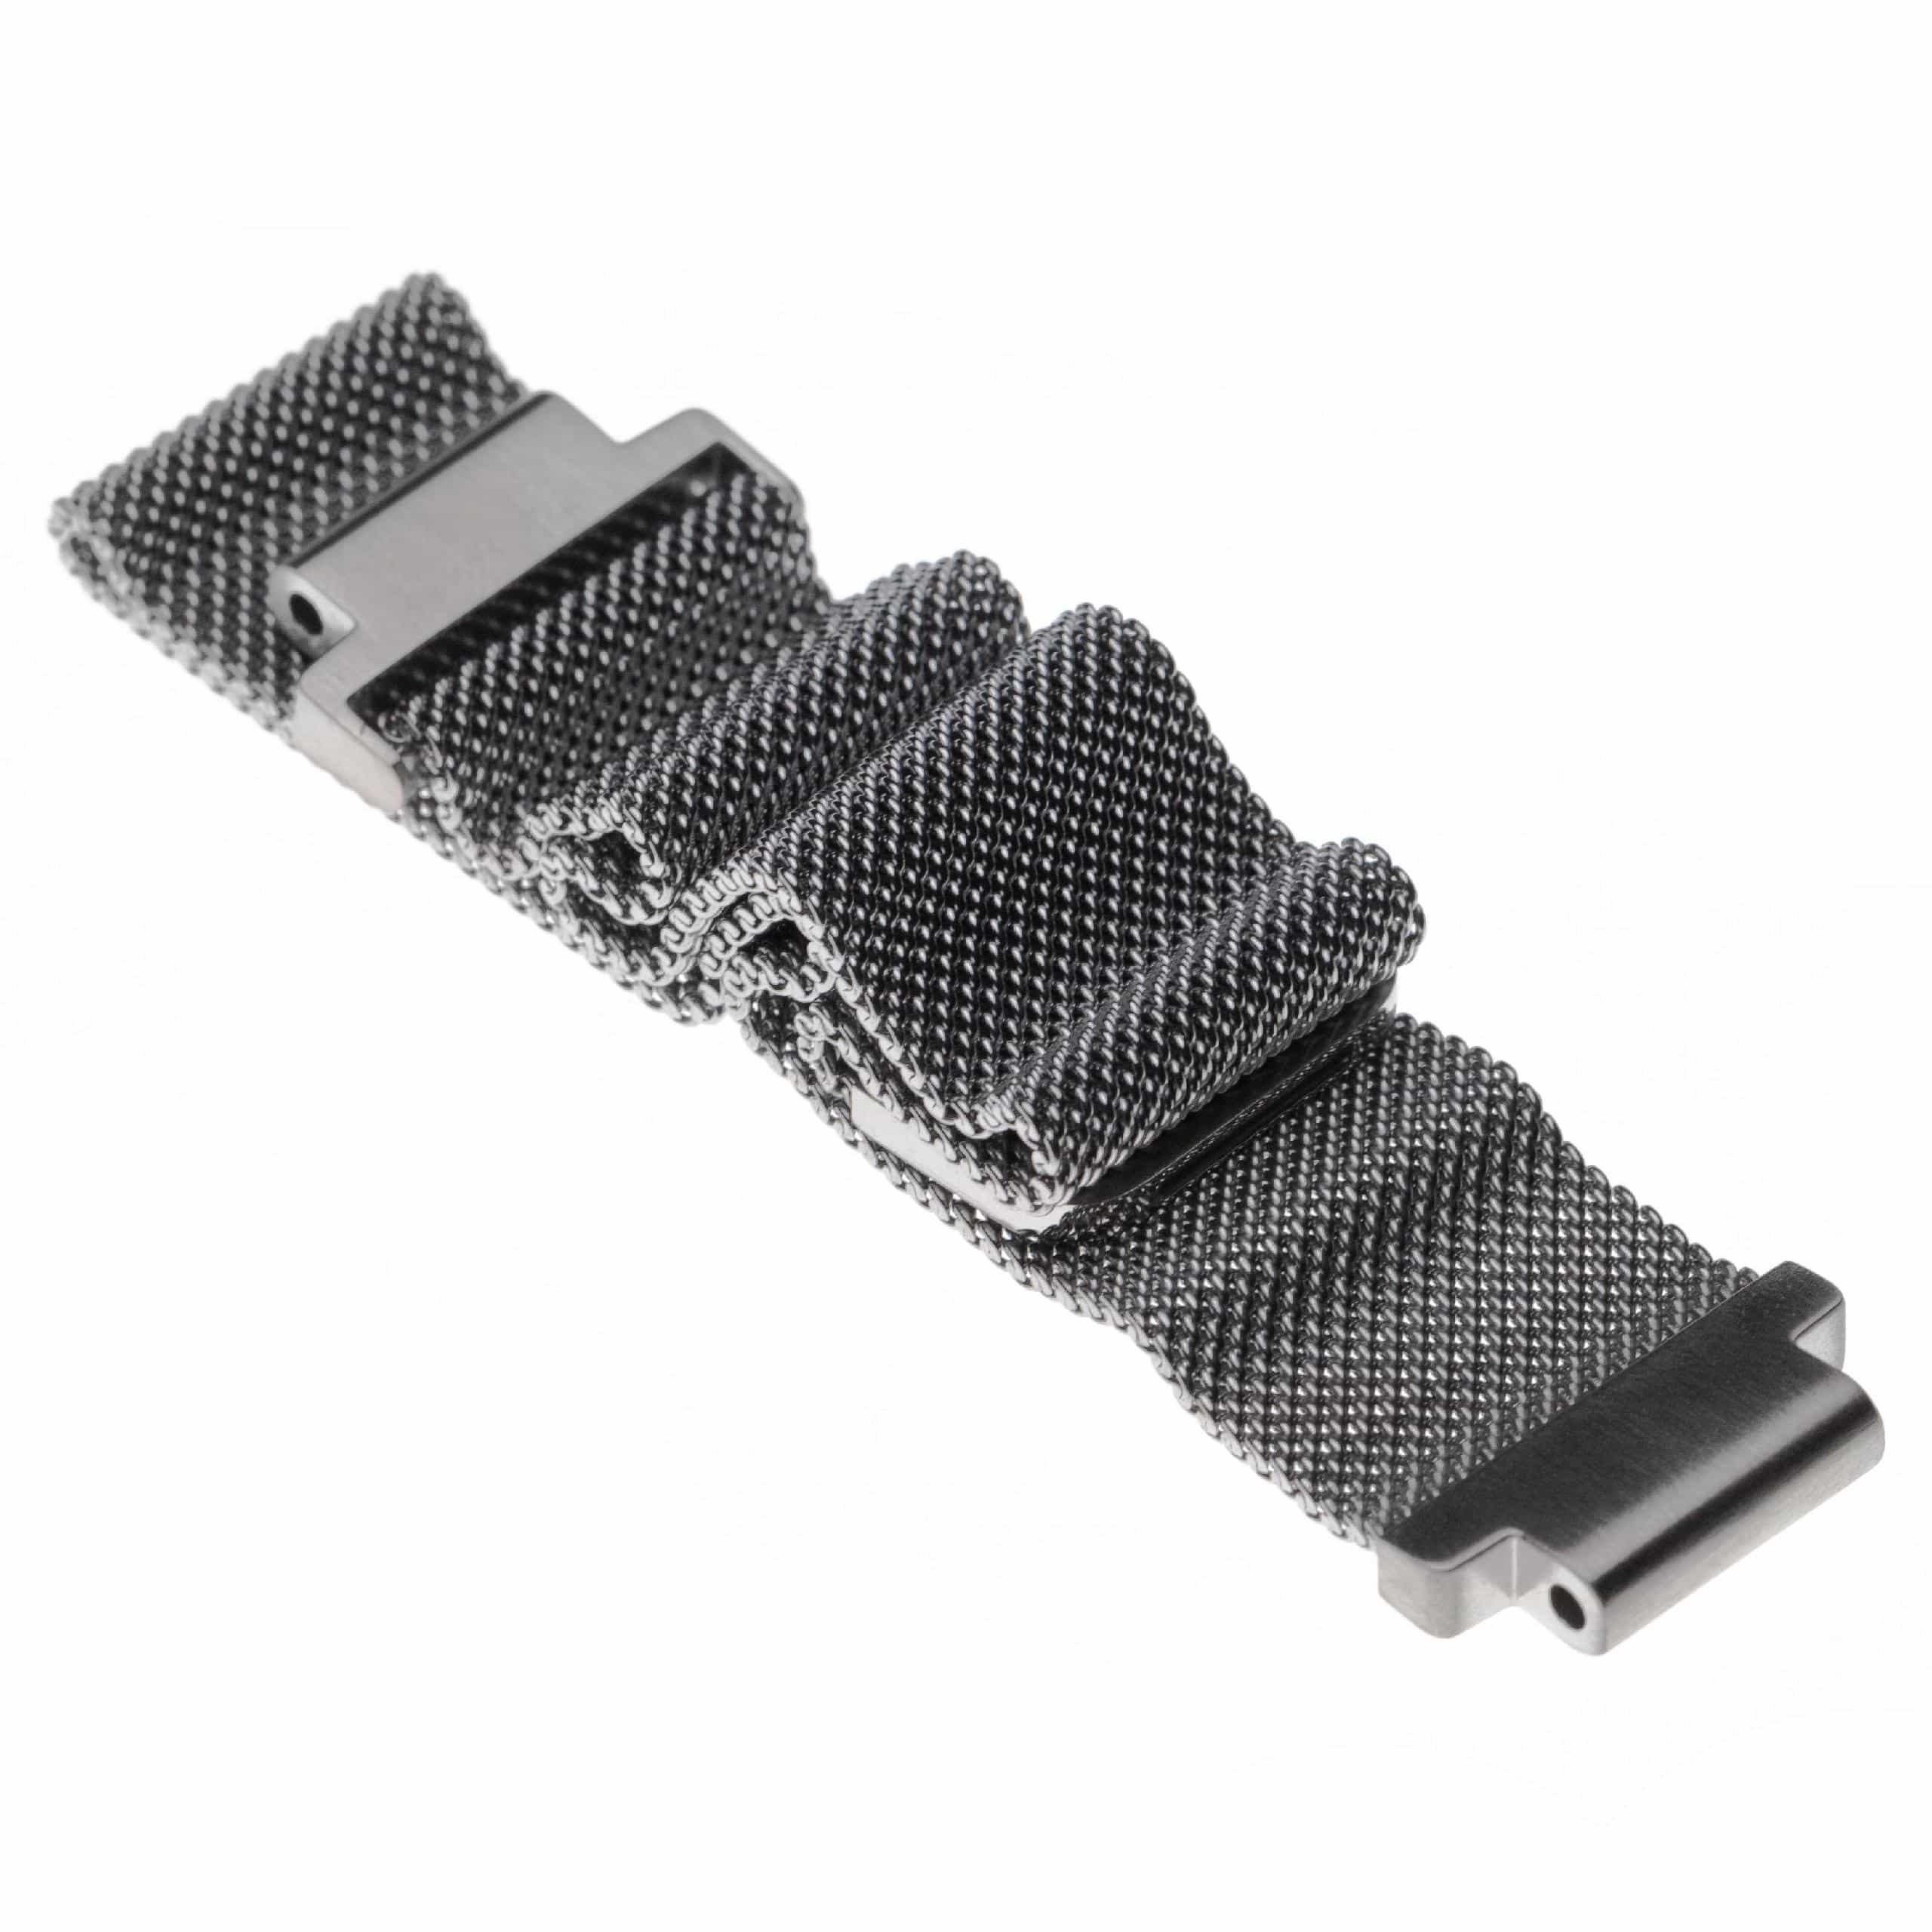 Armband für Garmin Forerunner / Approach Smartwatch - Bis 224 mm Gelenkumfang, Edelstahl, silber